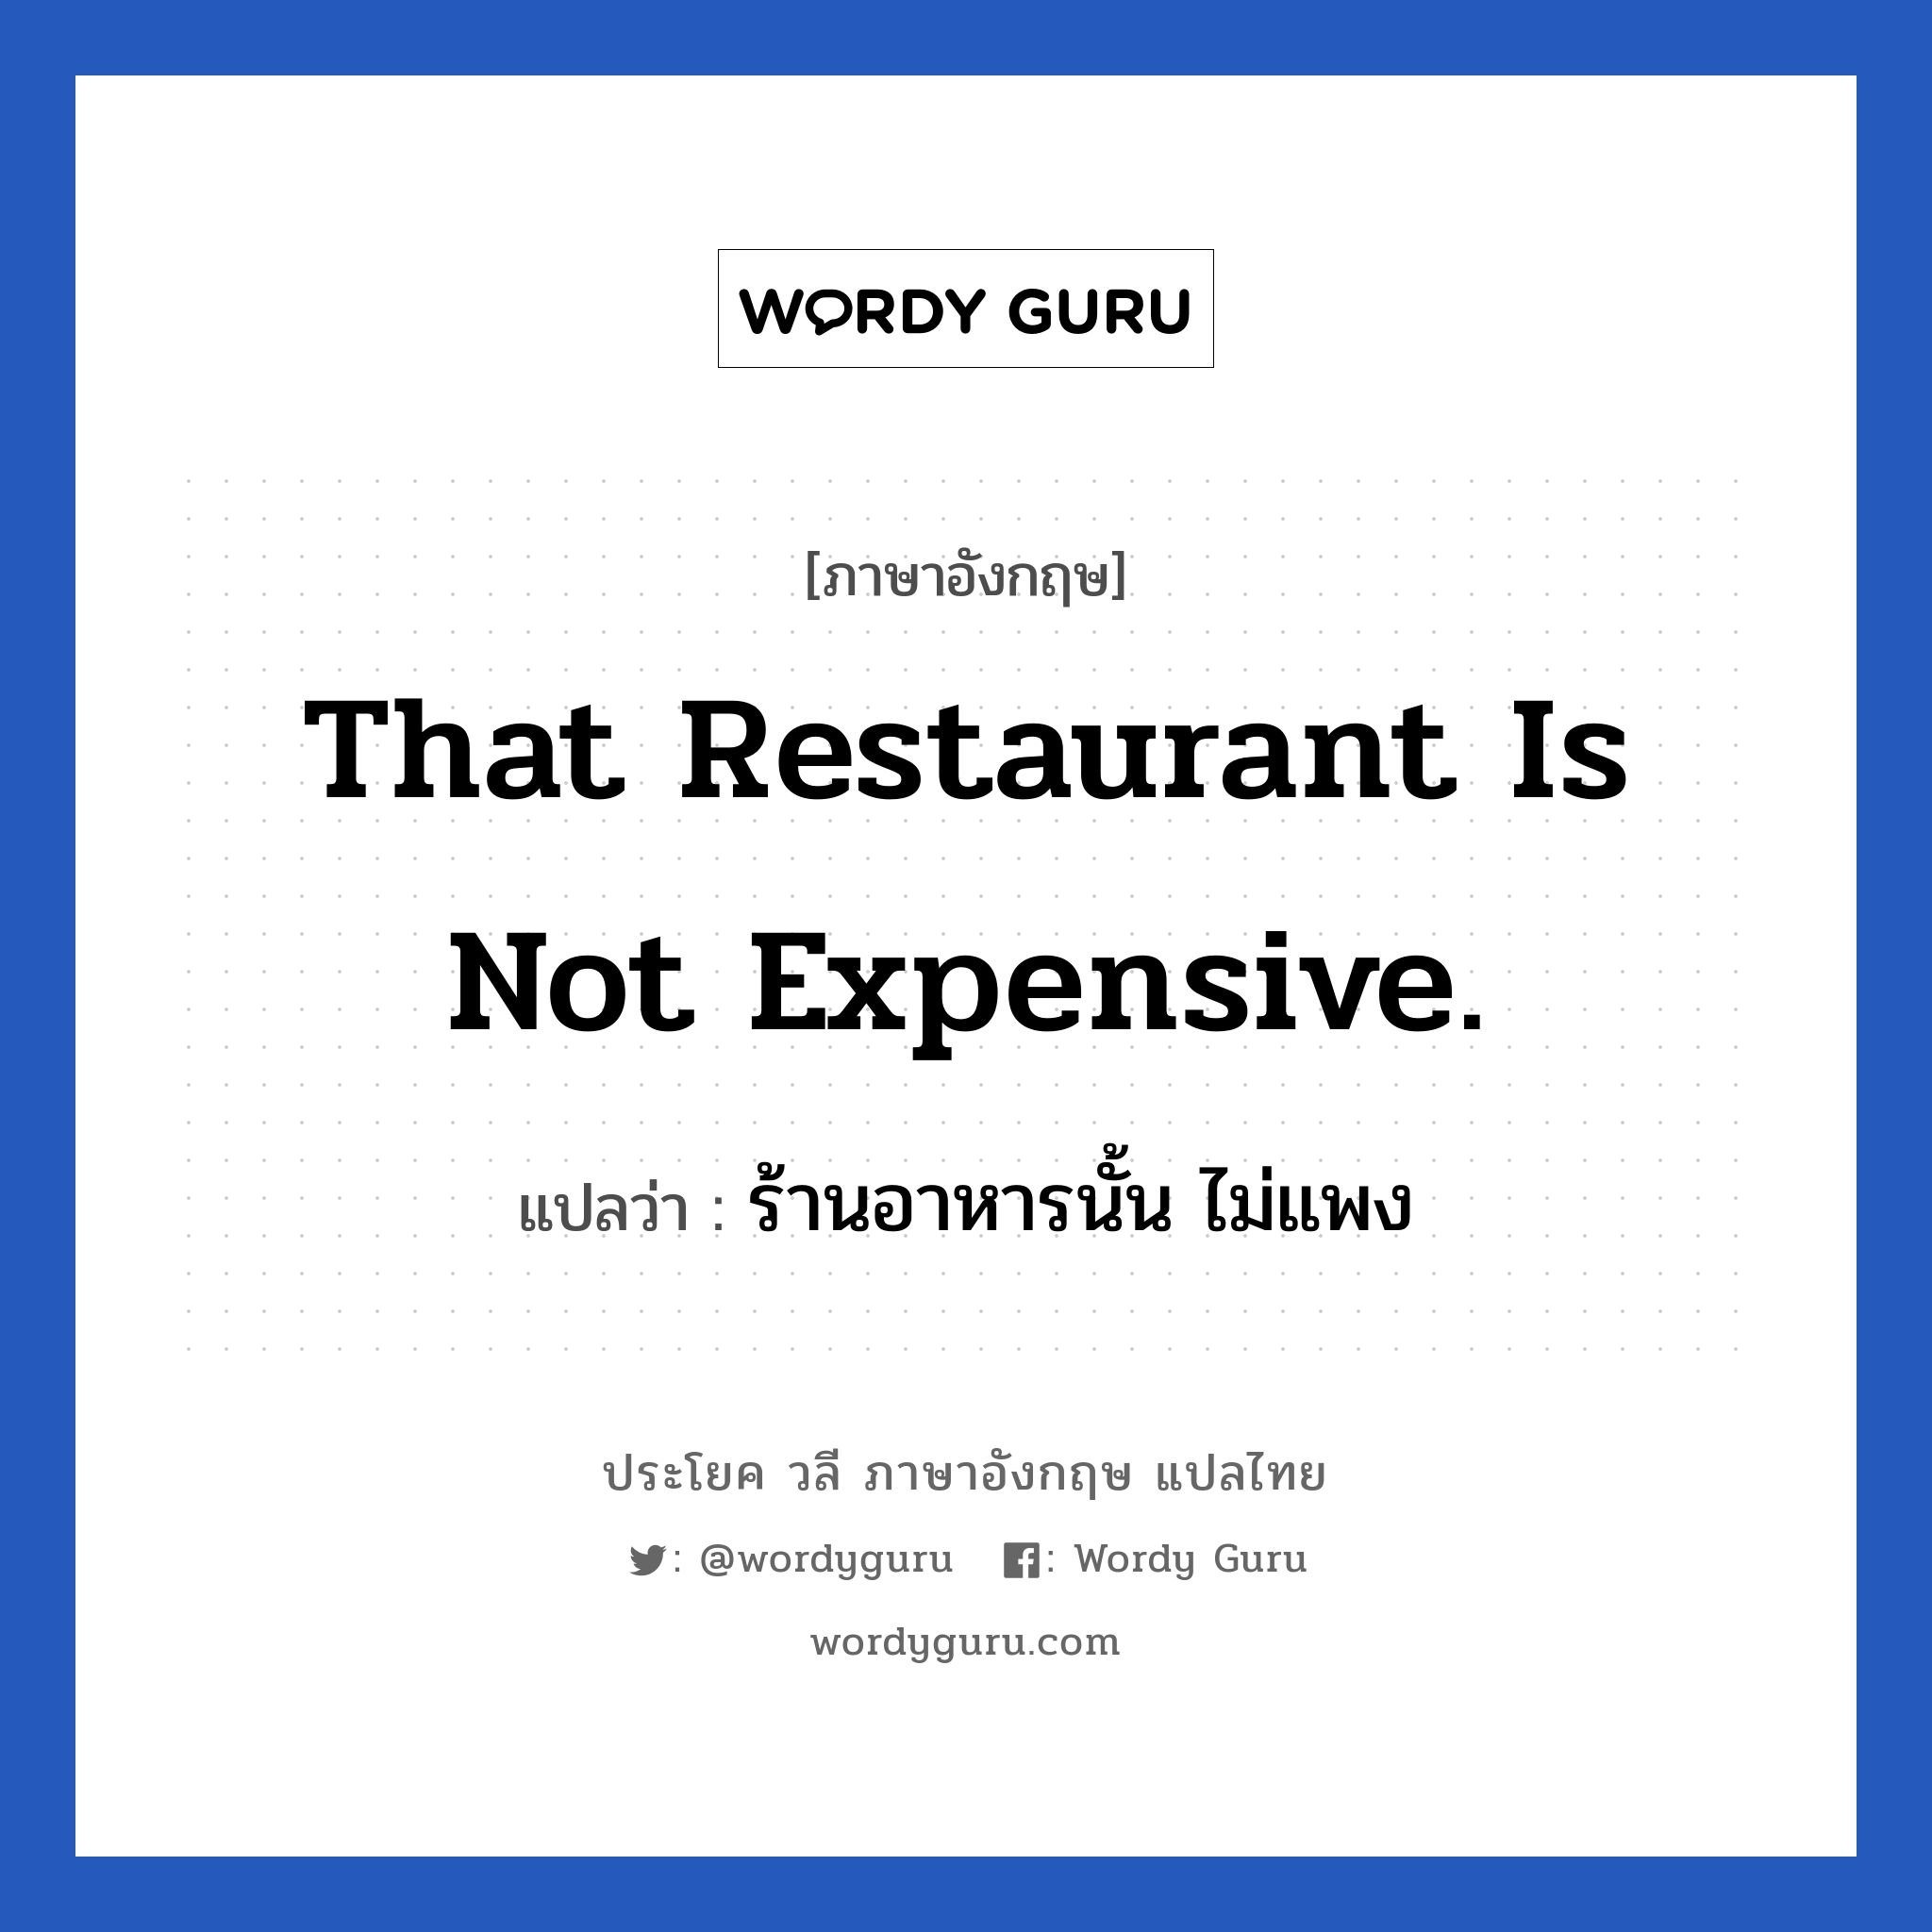 ร้านอาหารนั้น ไม่แพง ภาษาอังกฤษ?, วลีภาษาอังกฤษ ร้านอาหารนั้น ไม่แพง แปลว่า That restaurant is not expensive.